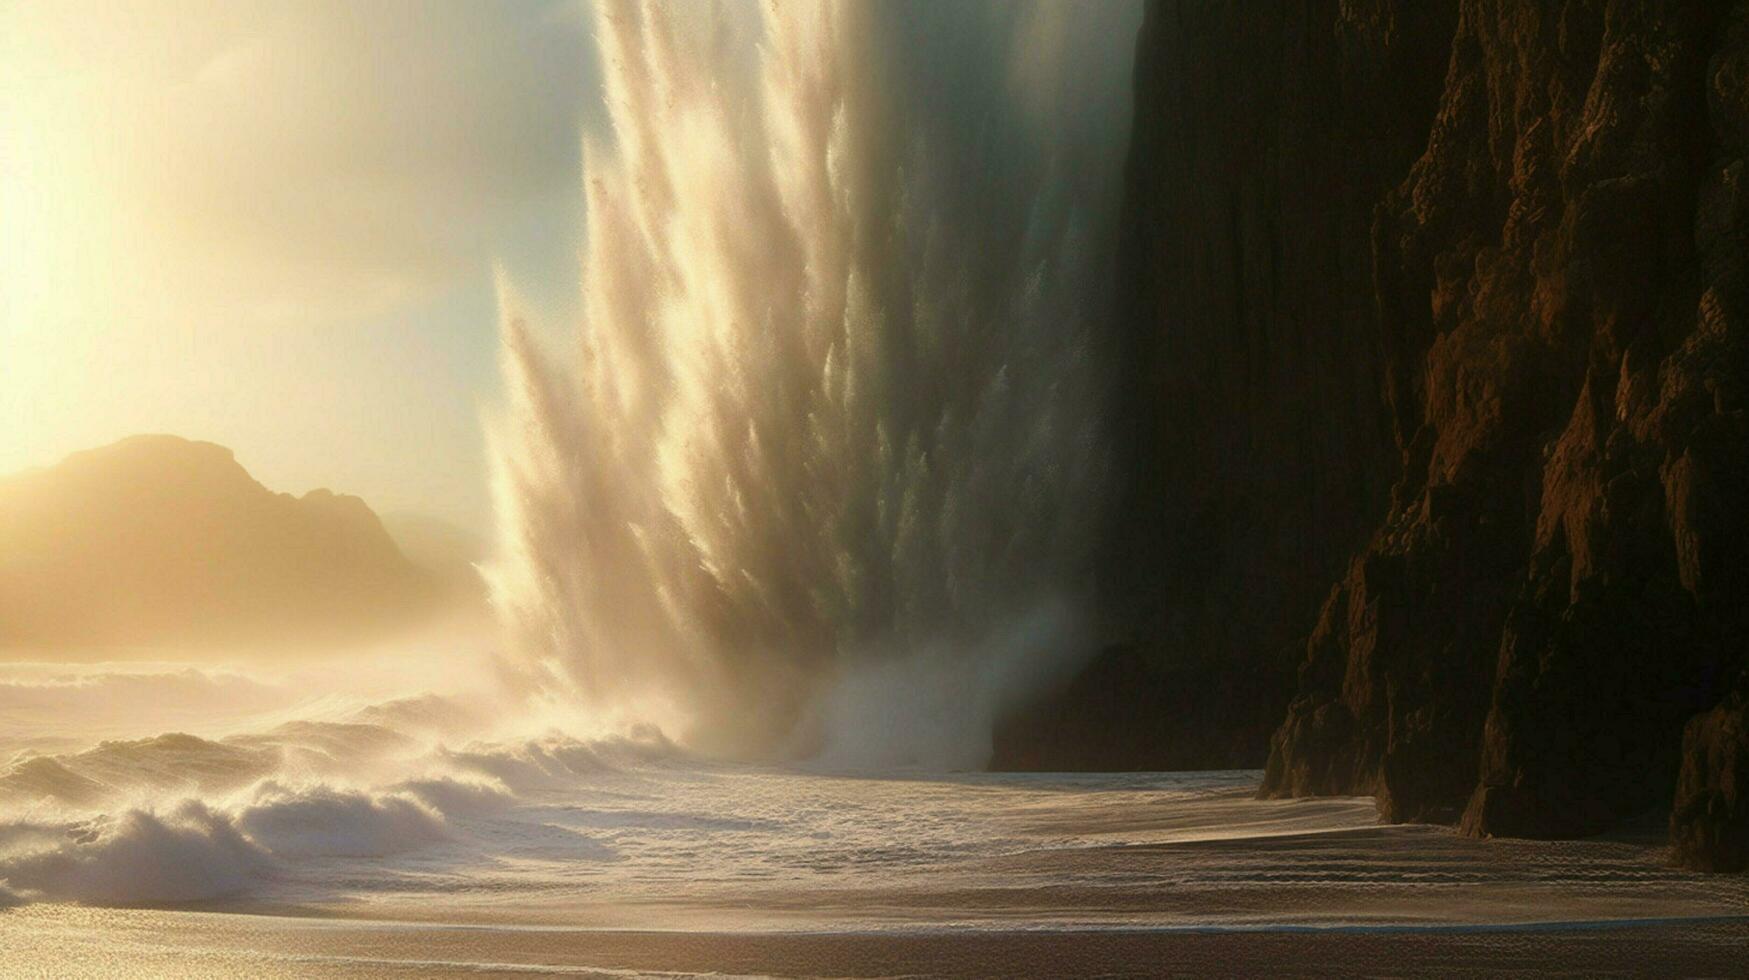 tsunami vagues crash contre imposant falaise envoyer photo